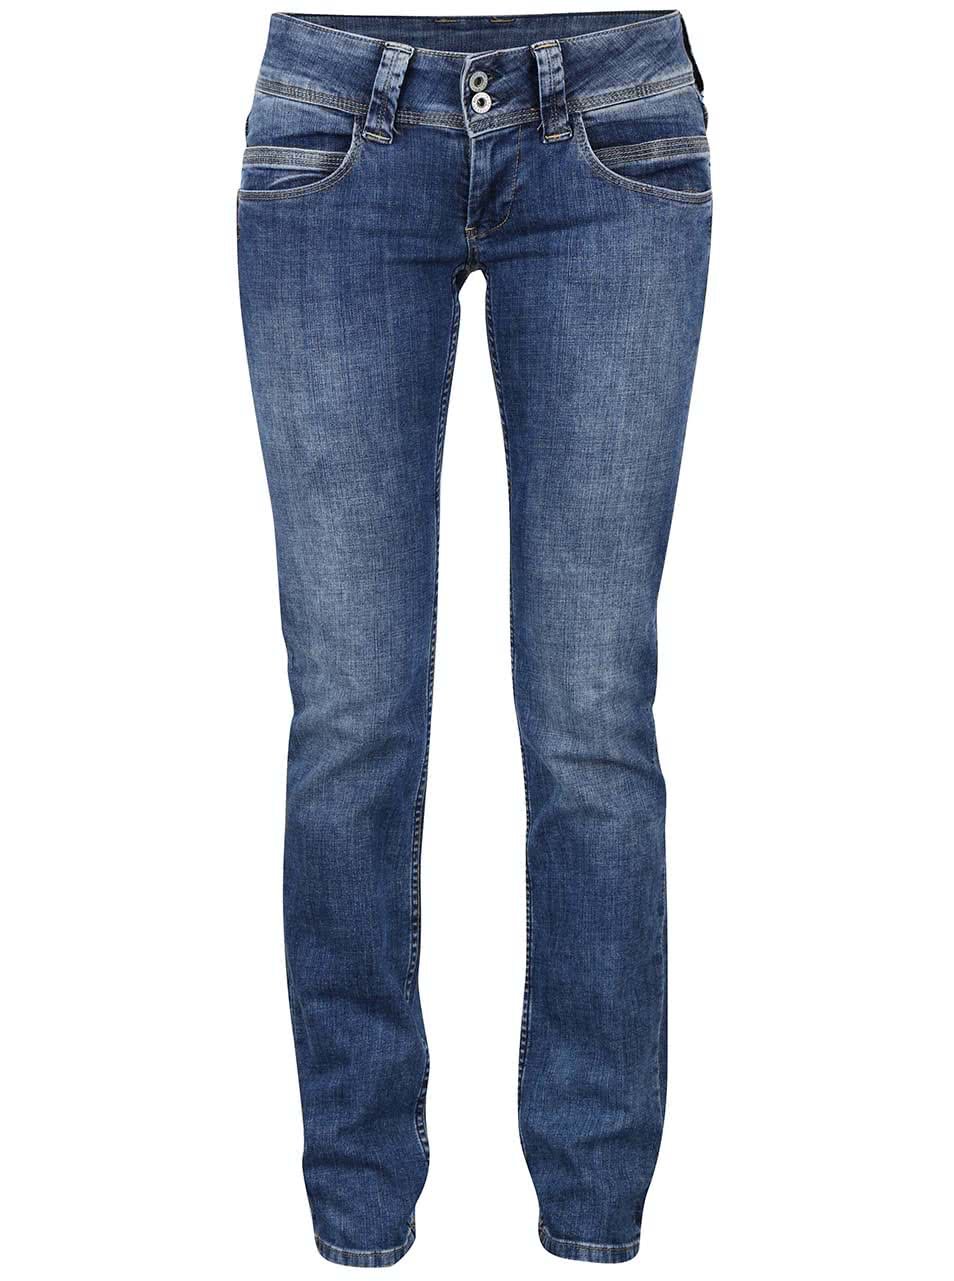 Modré dámské džíny s nízkým pasem Pepe Jeans Venus